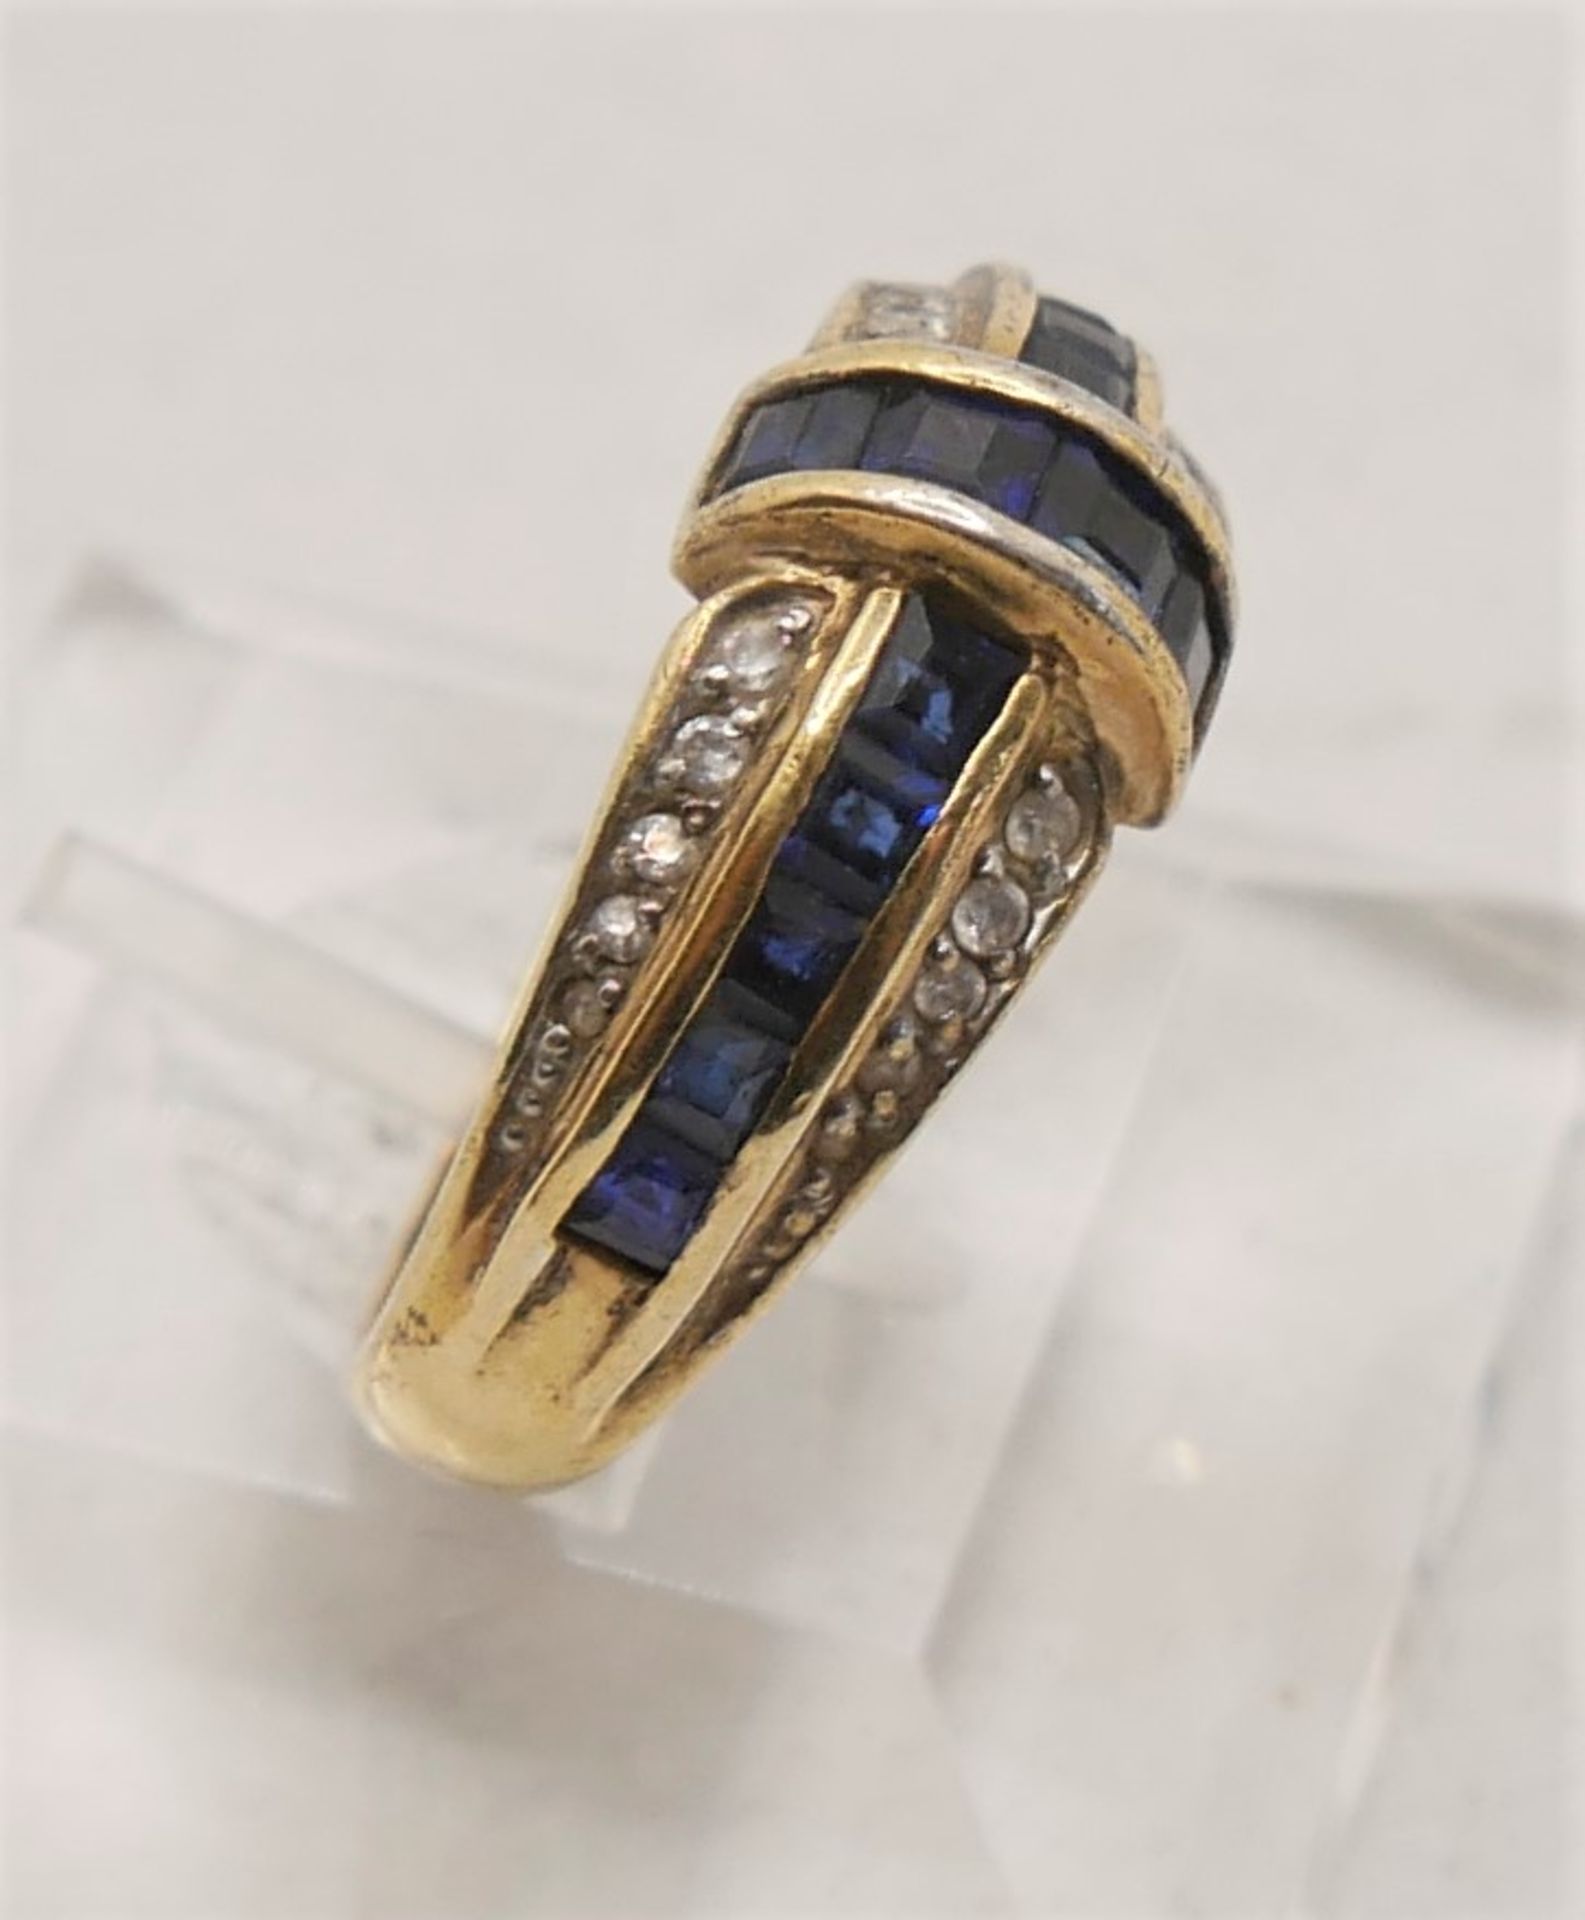 Damenring 925er Silber gepunzt,vergoldet, mit dunkelblauen Glassteinen,Ringgröße 60. - Image 2 of 2